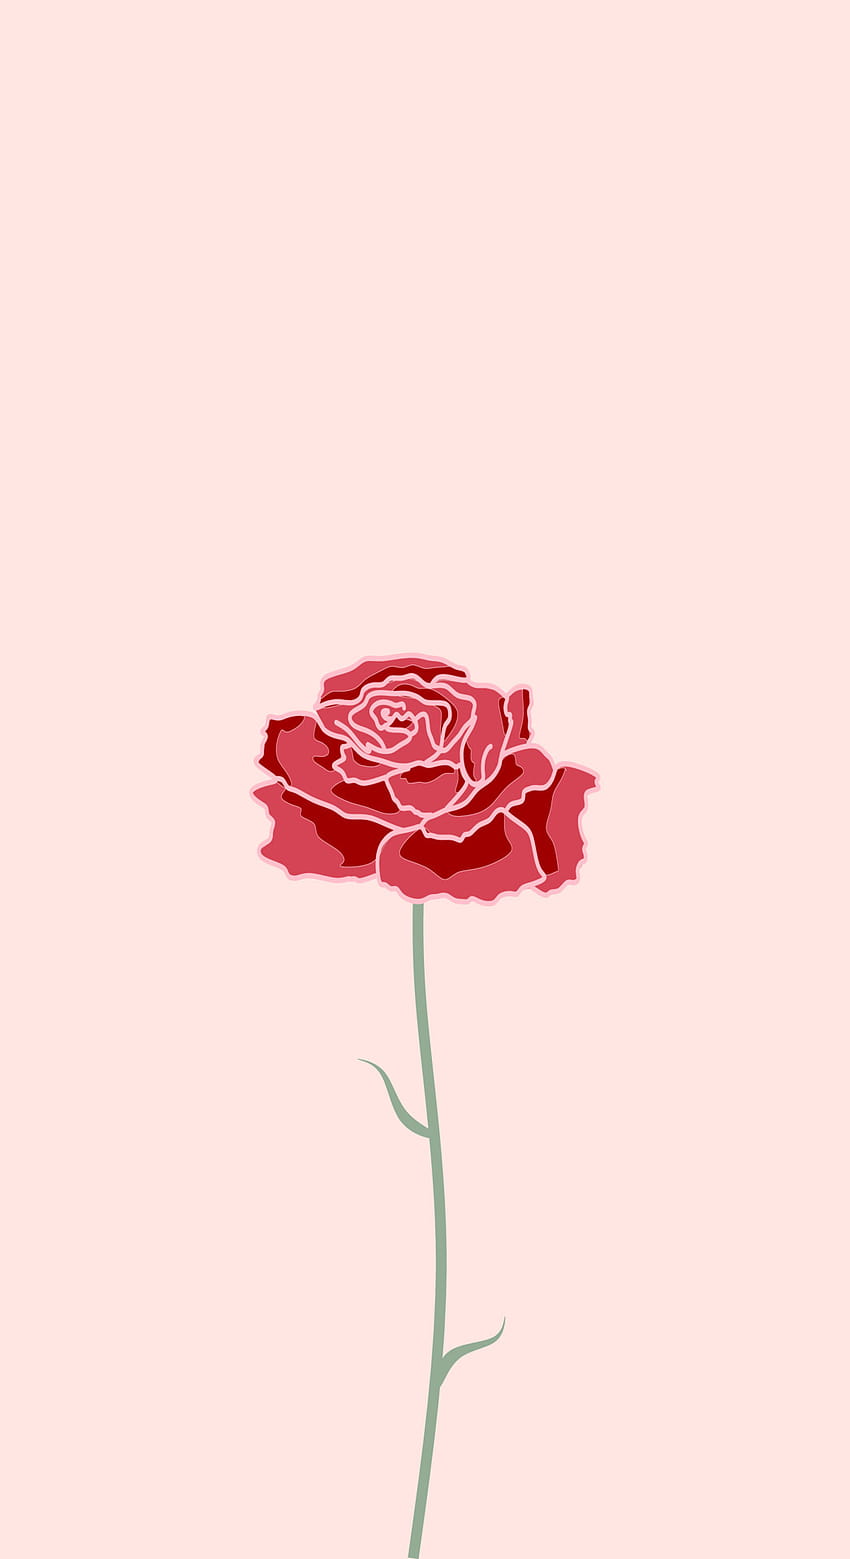 バラの花をデザインしたフラット スタイルの美しい夏のベクトル イラスト。 ロマンチックな審美的な自然の植物の背景。 携帯電話のスクリーン セーバーのテーマ、ロック画面、および . 4870663 ベクター アート HD電話の壁紙